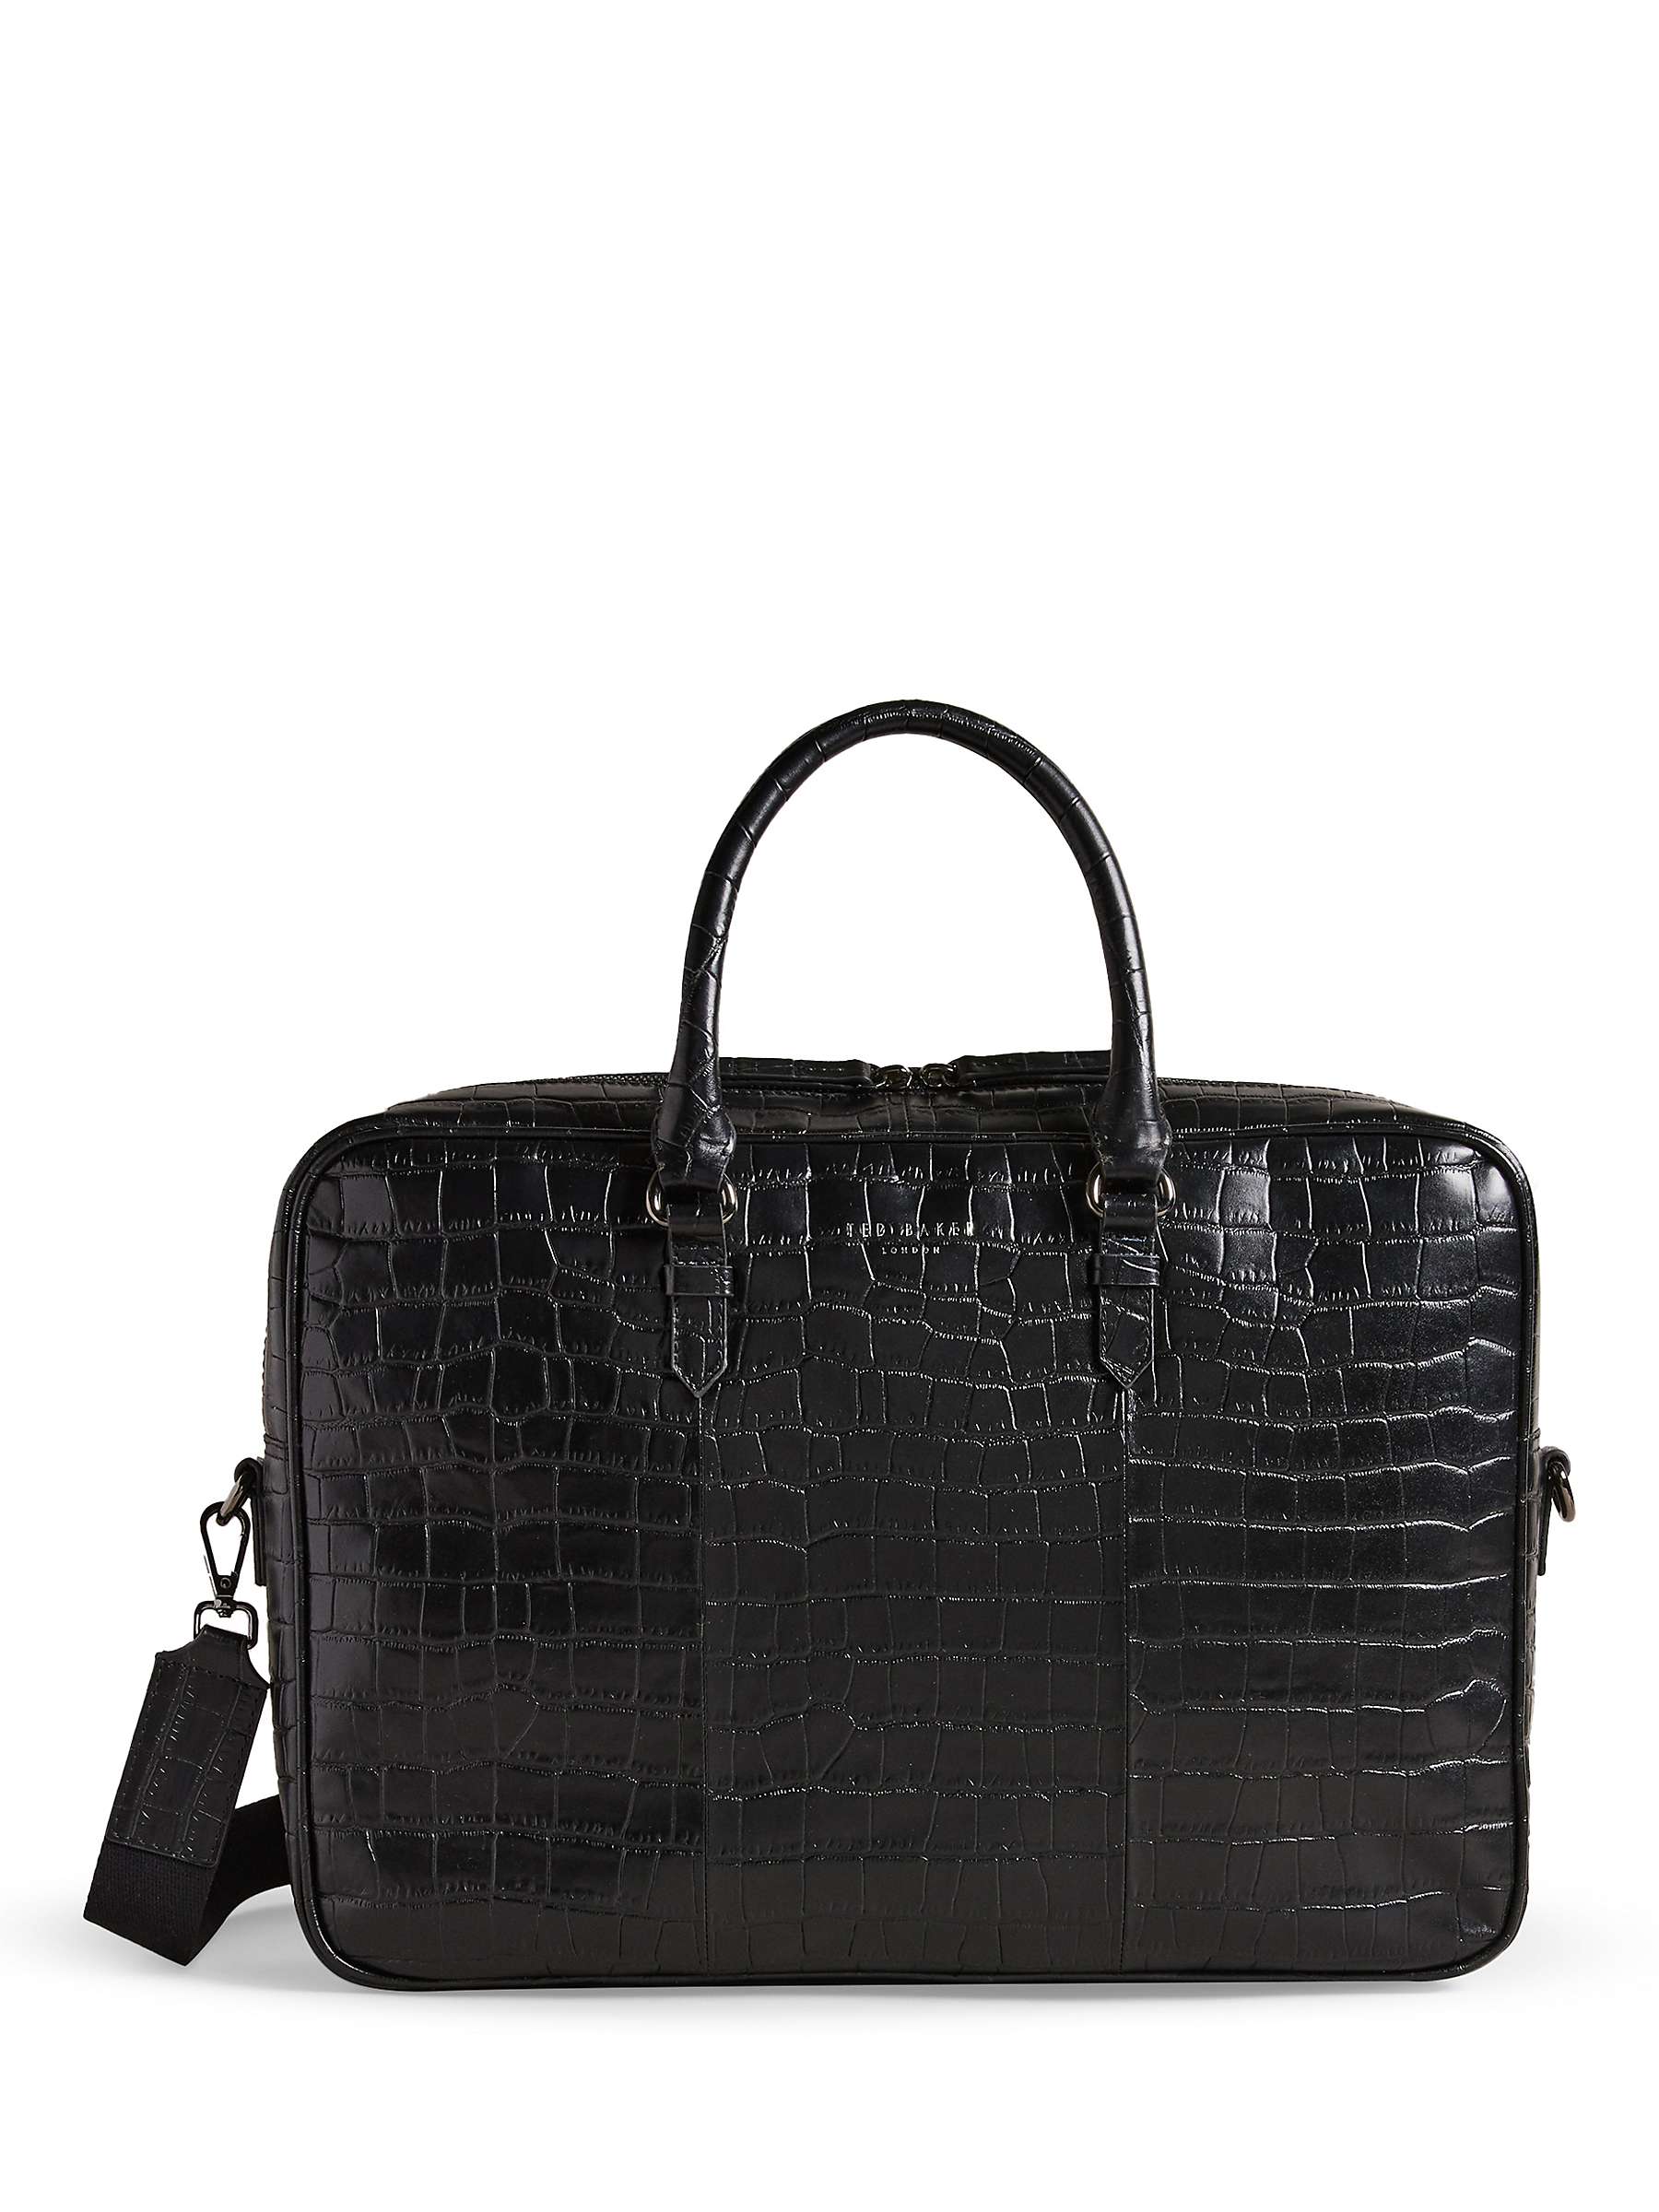 Buy Ted Baker Croc Briefcase, Black Online at johnlewis.com